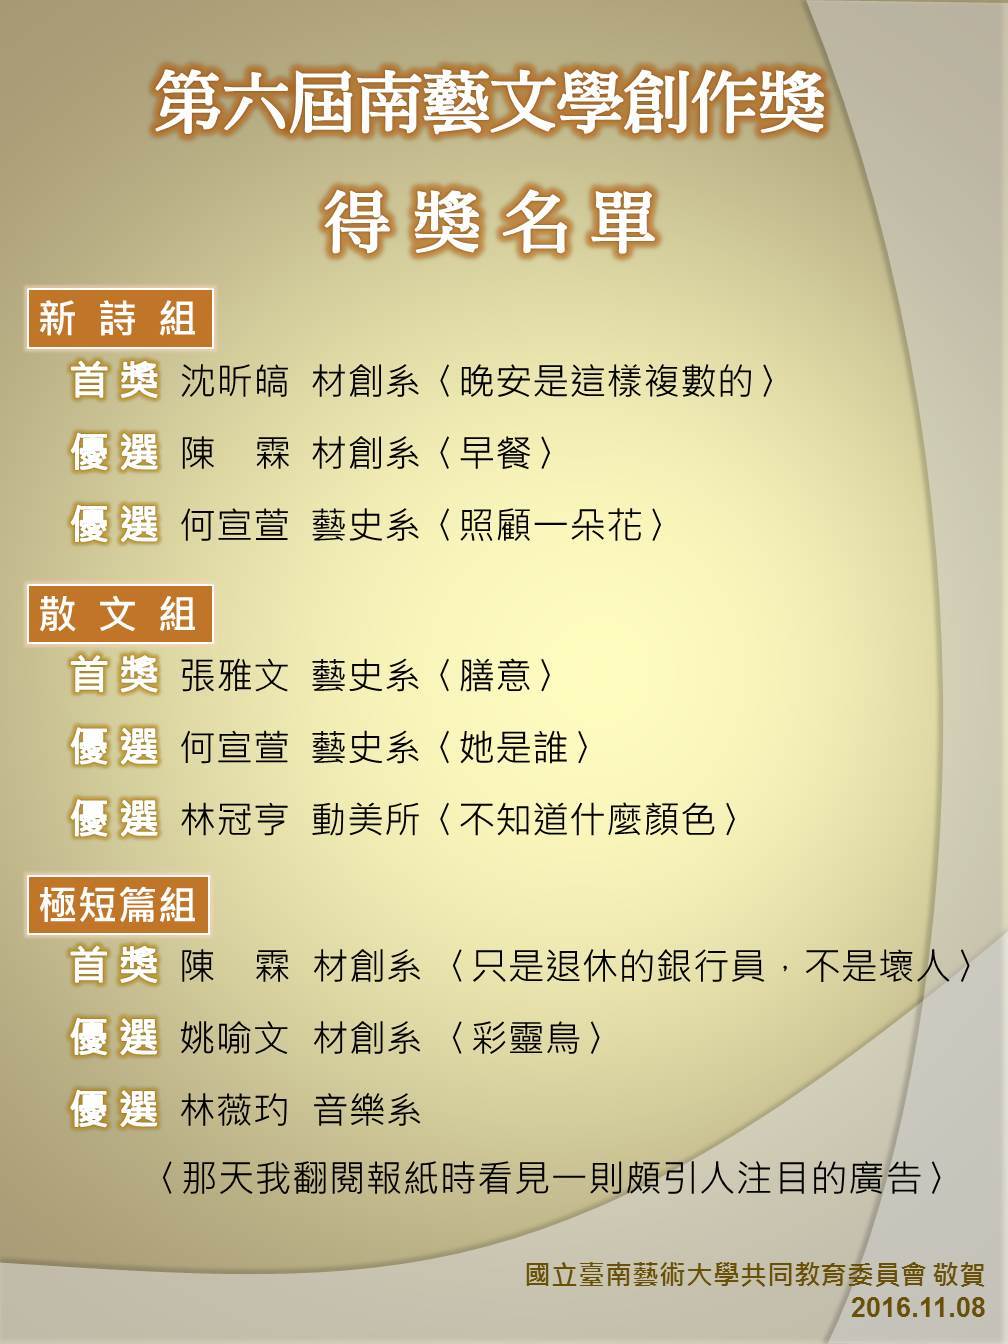 第六屆南藝文學創作獎得獎名單(說明如下)